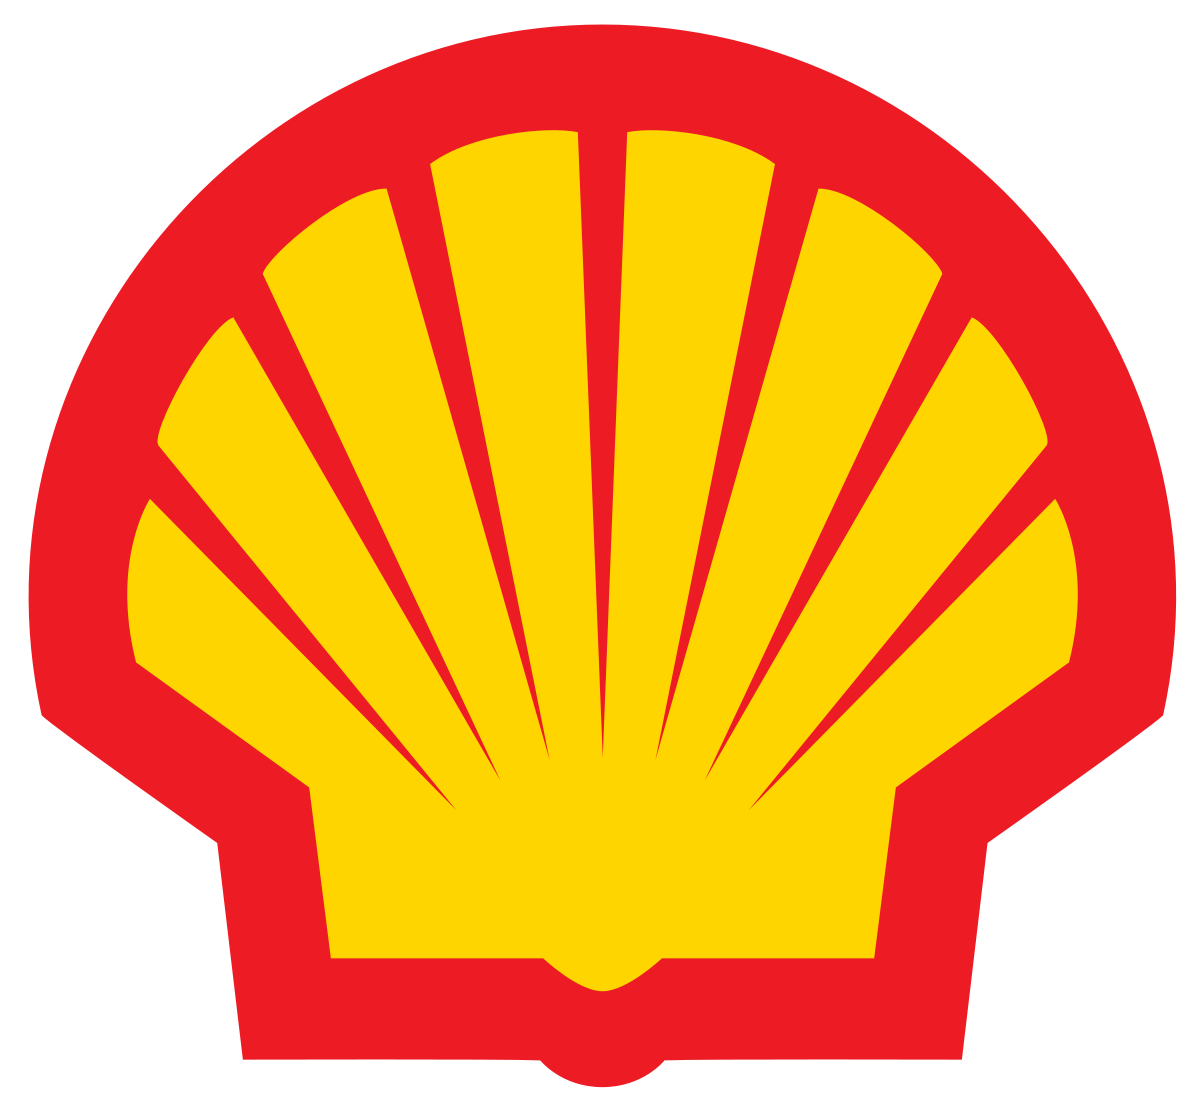 Shell India logo